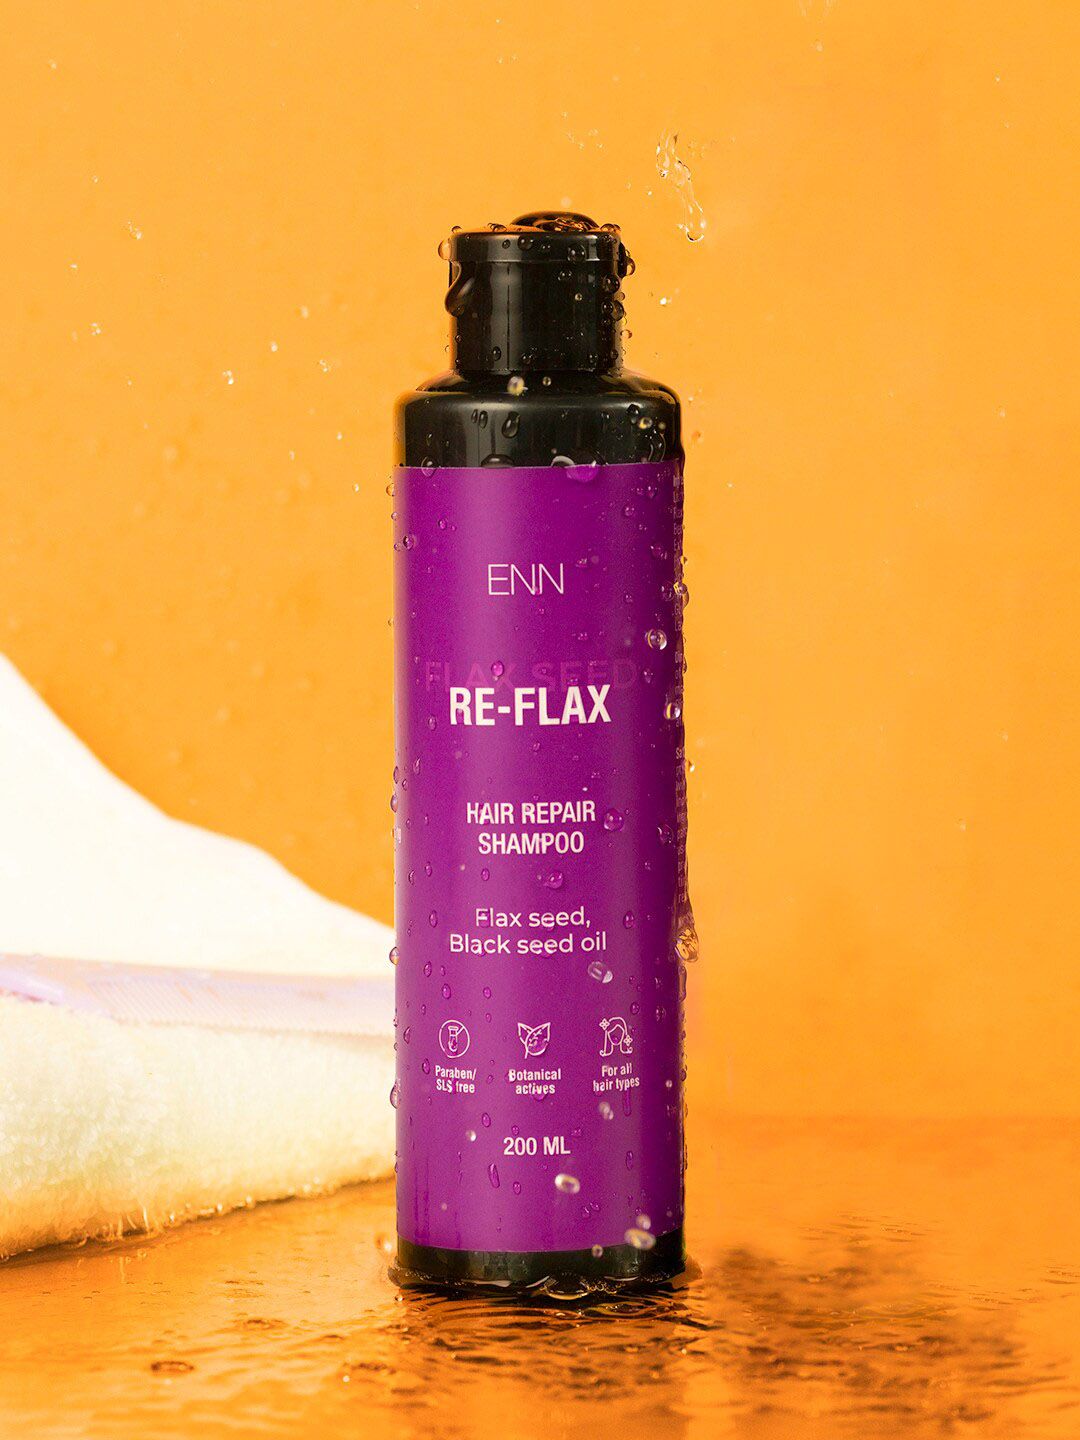 ENN Flax Seed & Black Seed Oil Re-Flax Hair Repair Shampoo - 200 ml Price in India